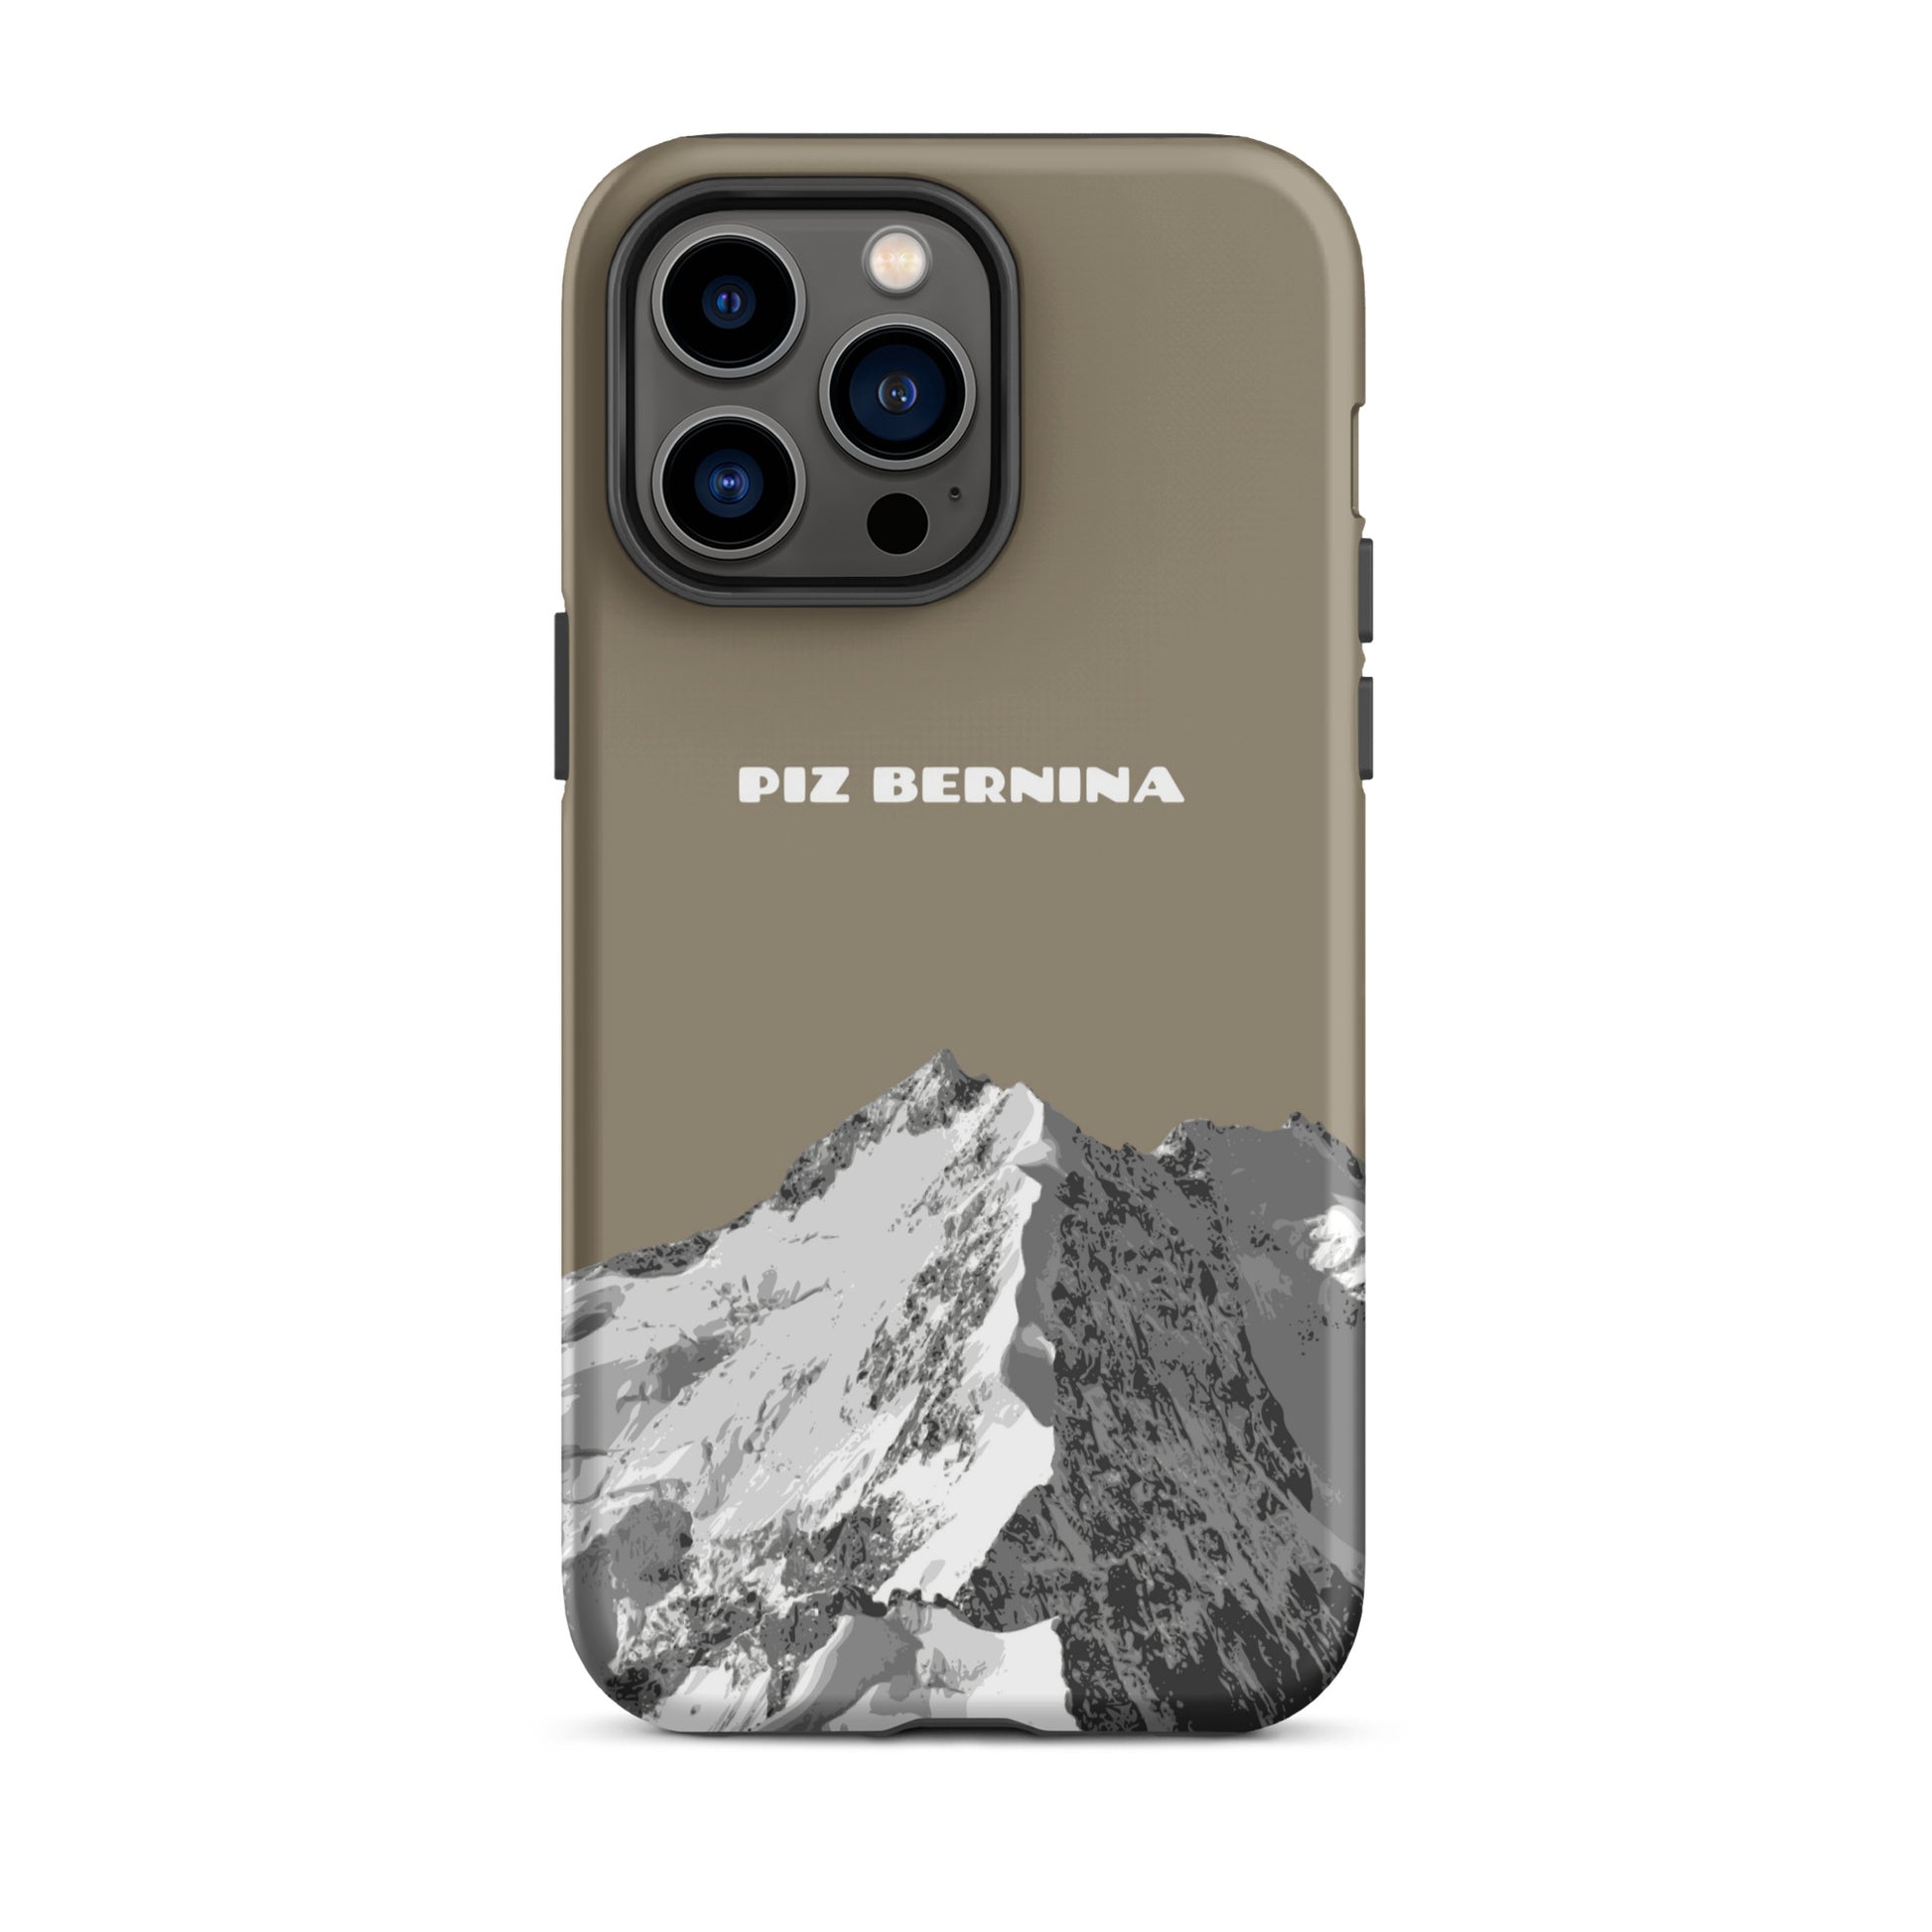 Hülle für das iPhone 14 Pro Max von Apple in der Farbe Graubraun, dass den Piz Bernina in Graubünden zeigt.